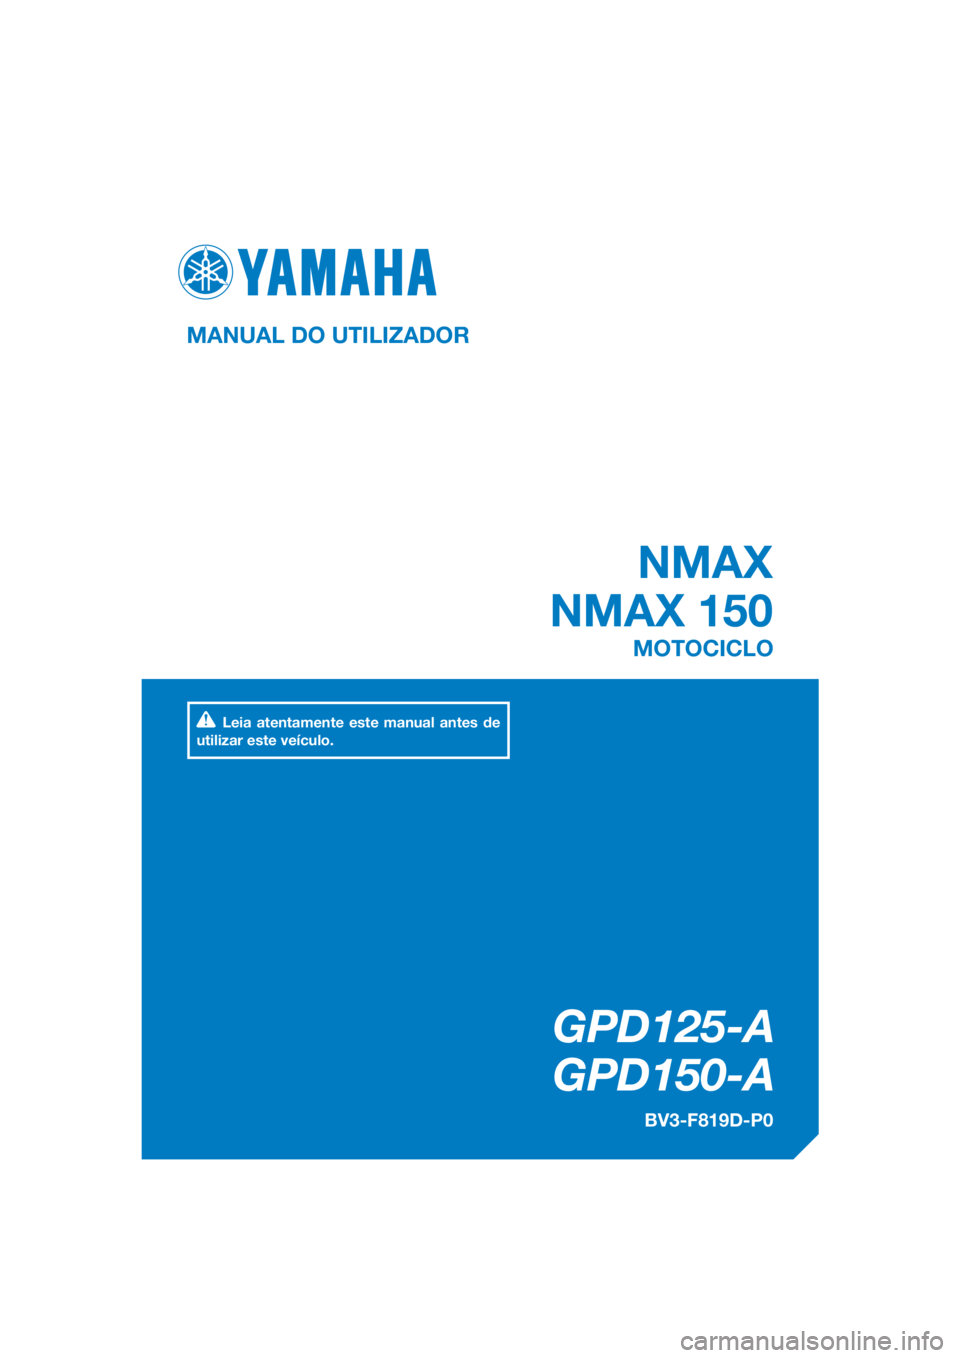 YAMAHA NMAX 150 2018  Manual de utilização (in Portuguese) DIC183
 NMAX
NMAX 150
GPD125-A
   GPD150-A
MANUAL DO UTILIZADOR
BV3-F819D-P0
MOTOCICLO
Leia atentamente este manual antes de 
utilizar este veículo.
[Portuguese  (P)] 